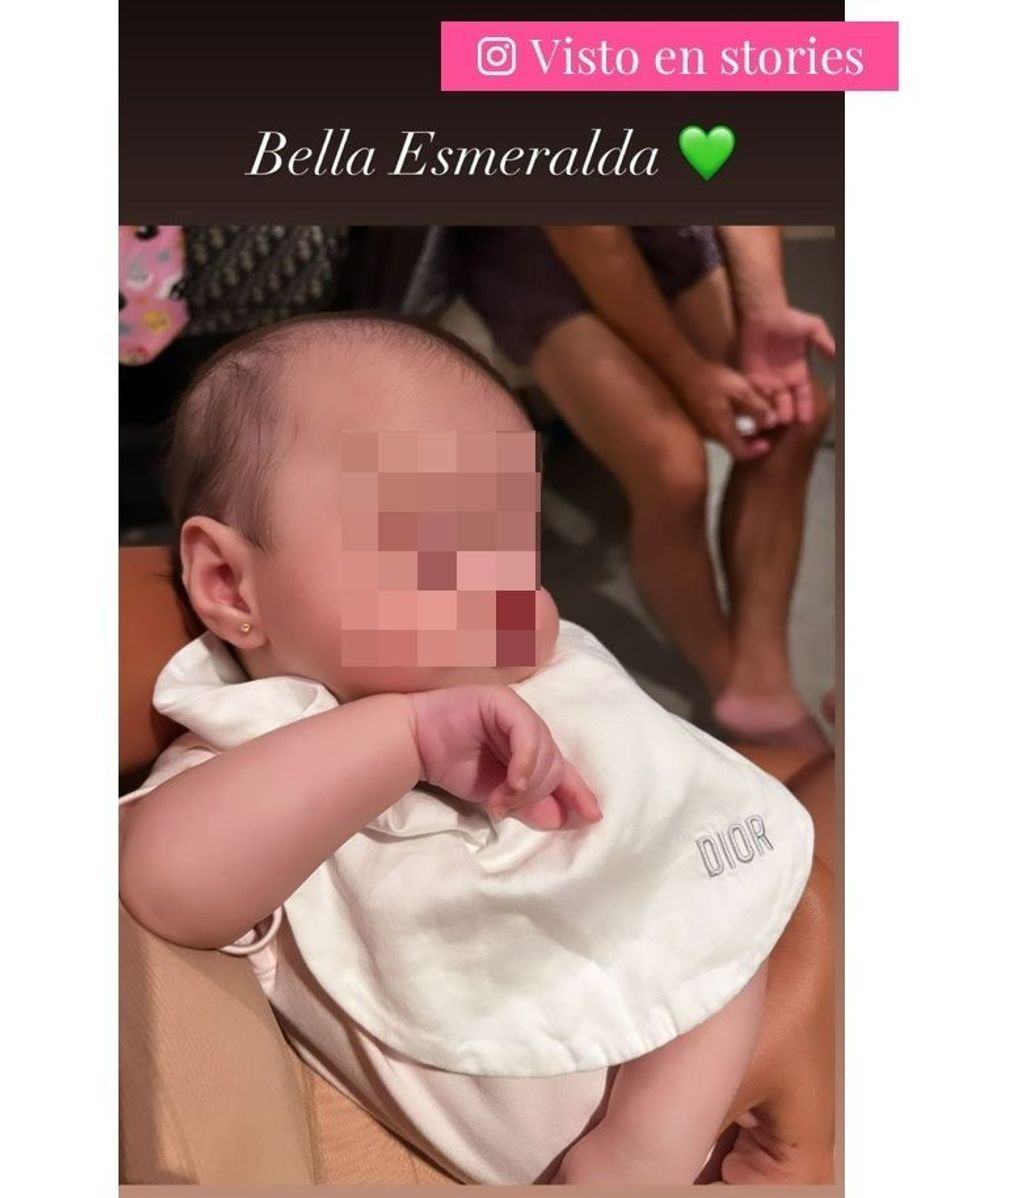 Así ha crecido Bella Esmeralda en solo tres meses